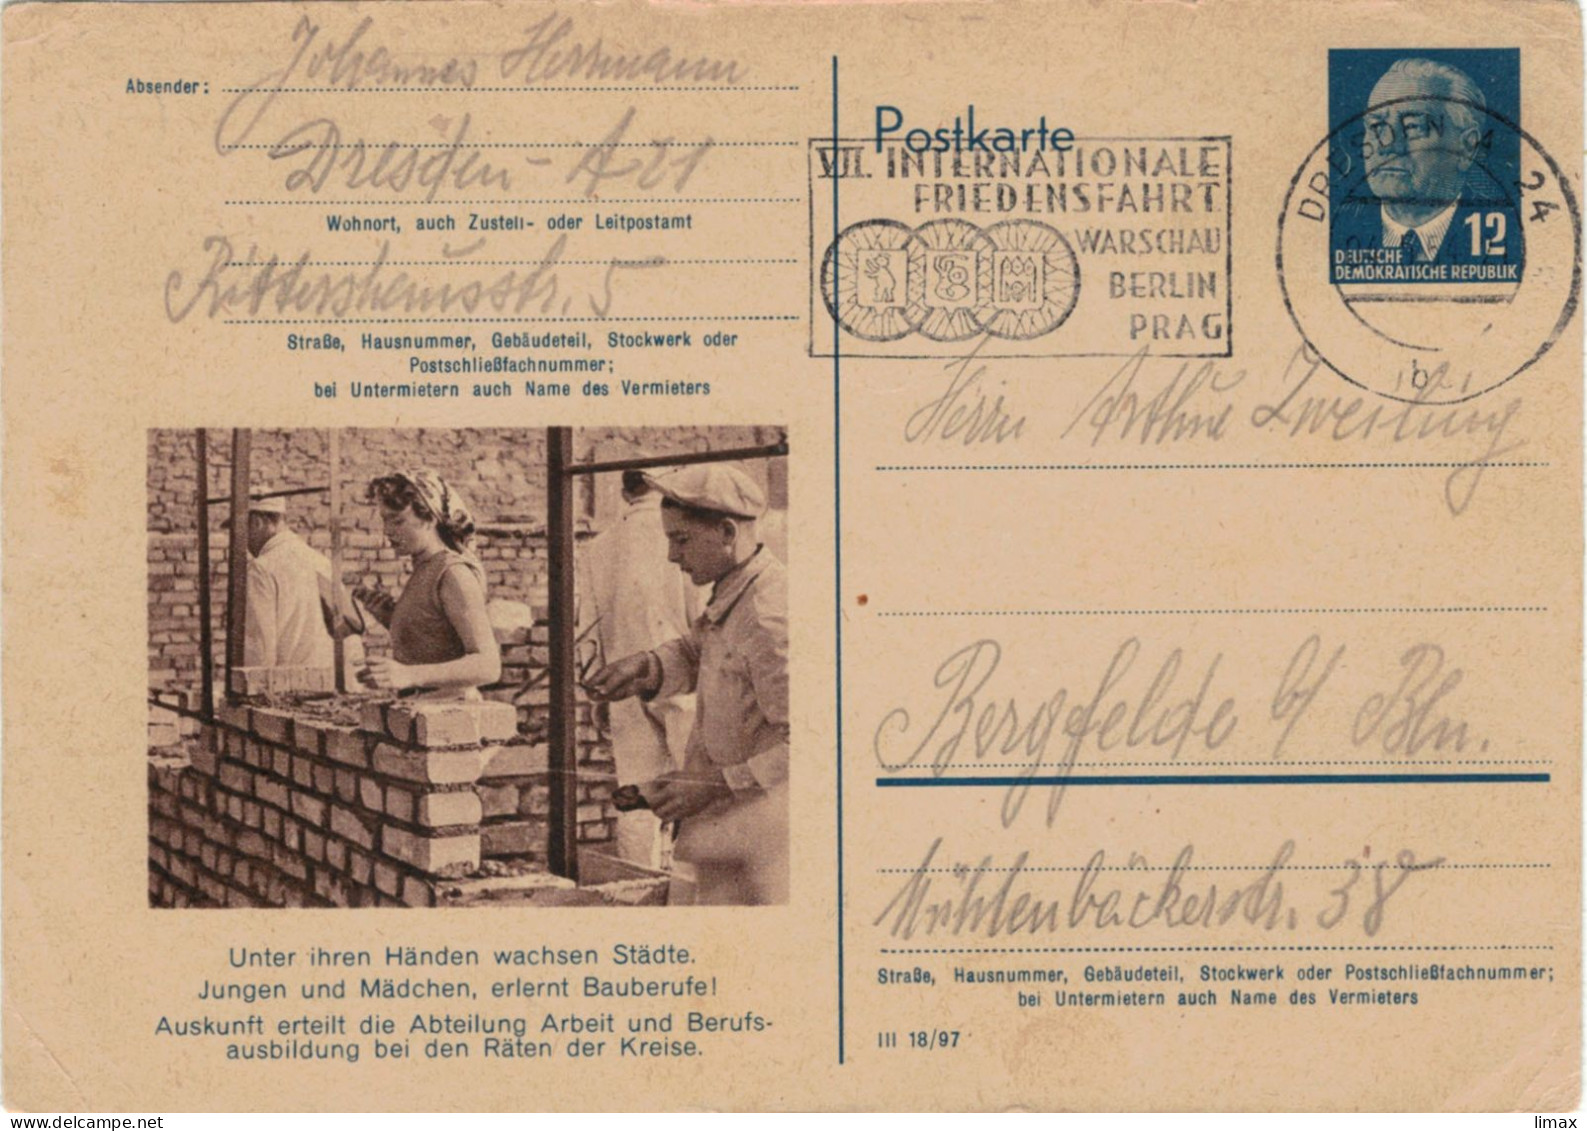 Niemand Hat Die Absicht, Eine Mauer Zu Errichten! - Berlin 1954 - Ganzsache Ziegel Maurer Mörtel DDR Pieck Friedensfahrt - Postkaarten - Gebruikt